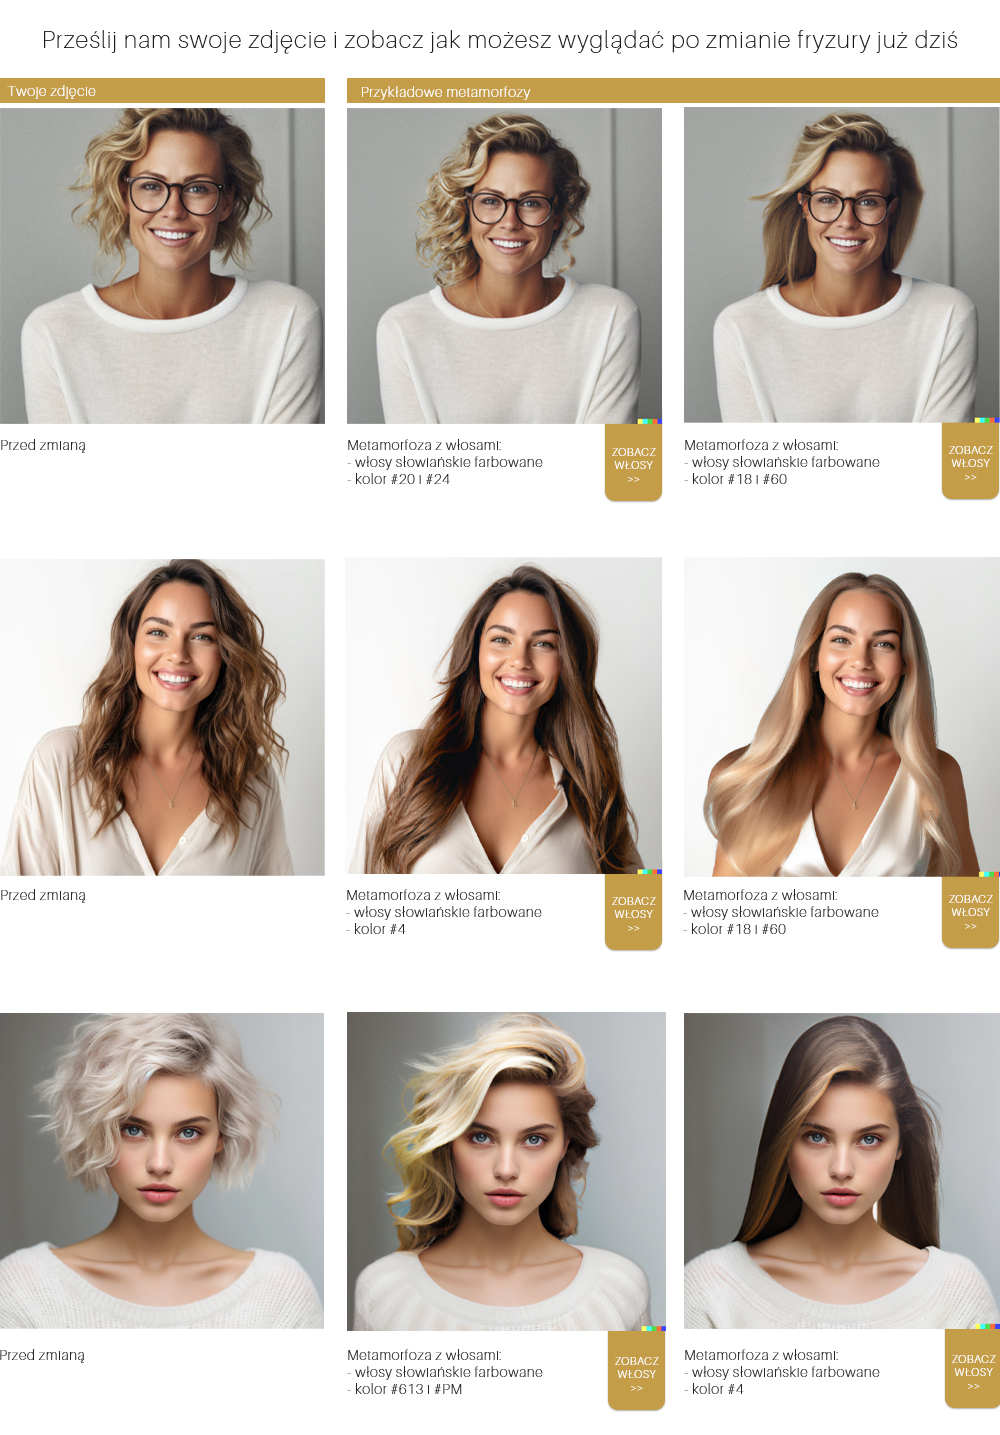 Włosy klientki przed i po zabiegu przedłużania włosami słowiańskimi